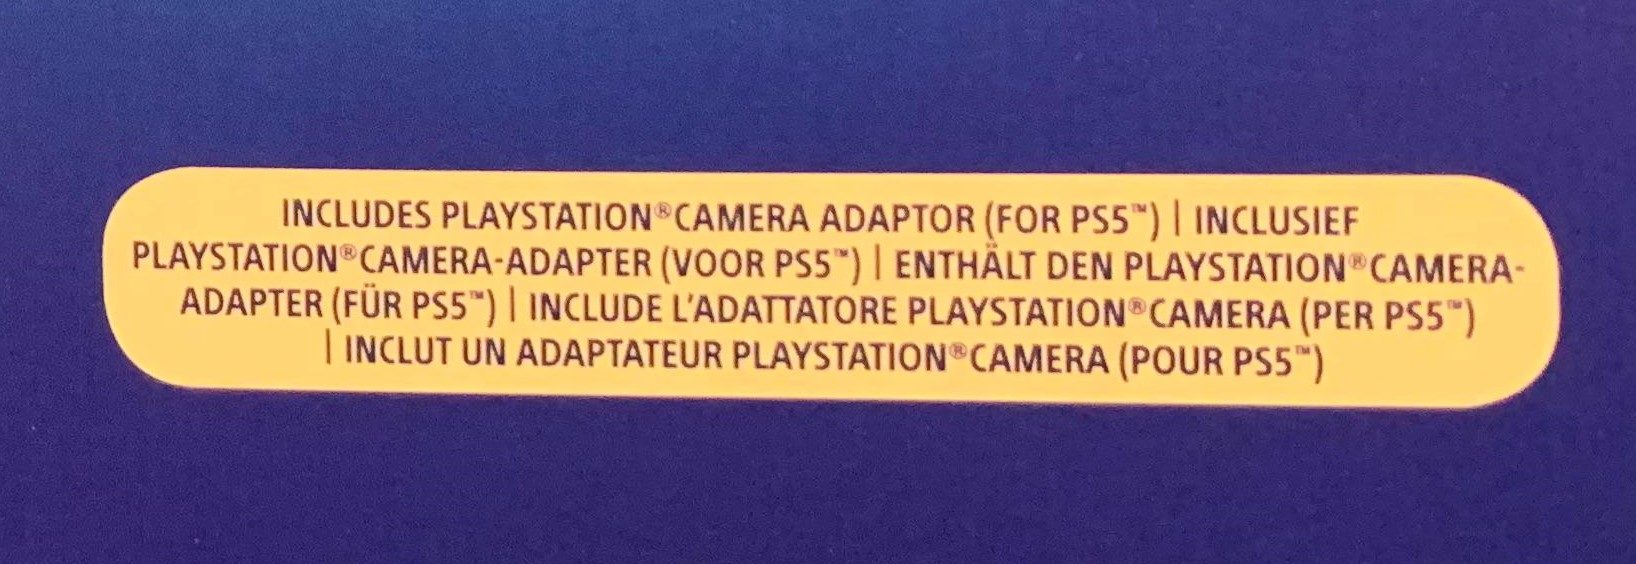 ps4 camera adapter ps5